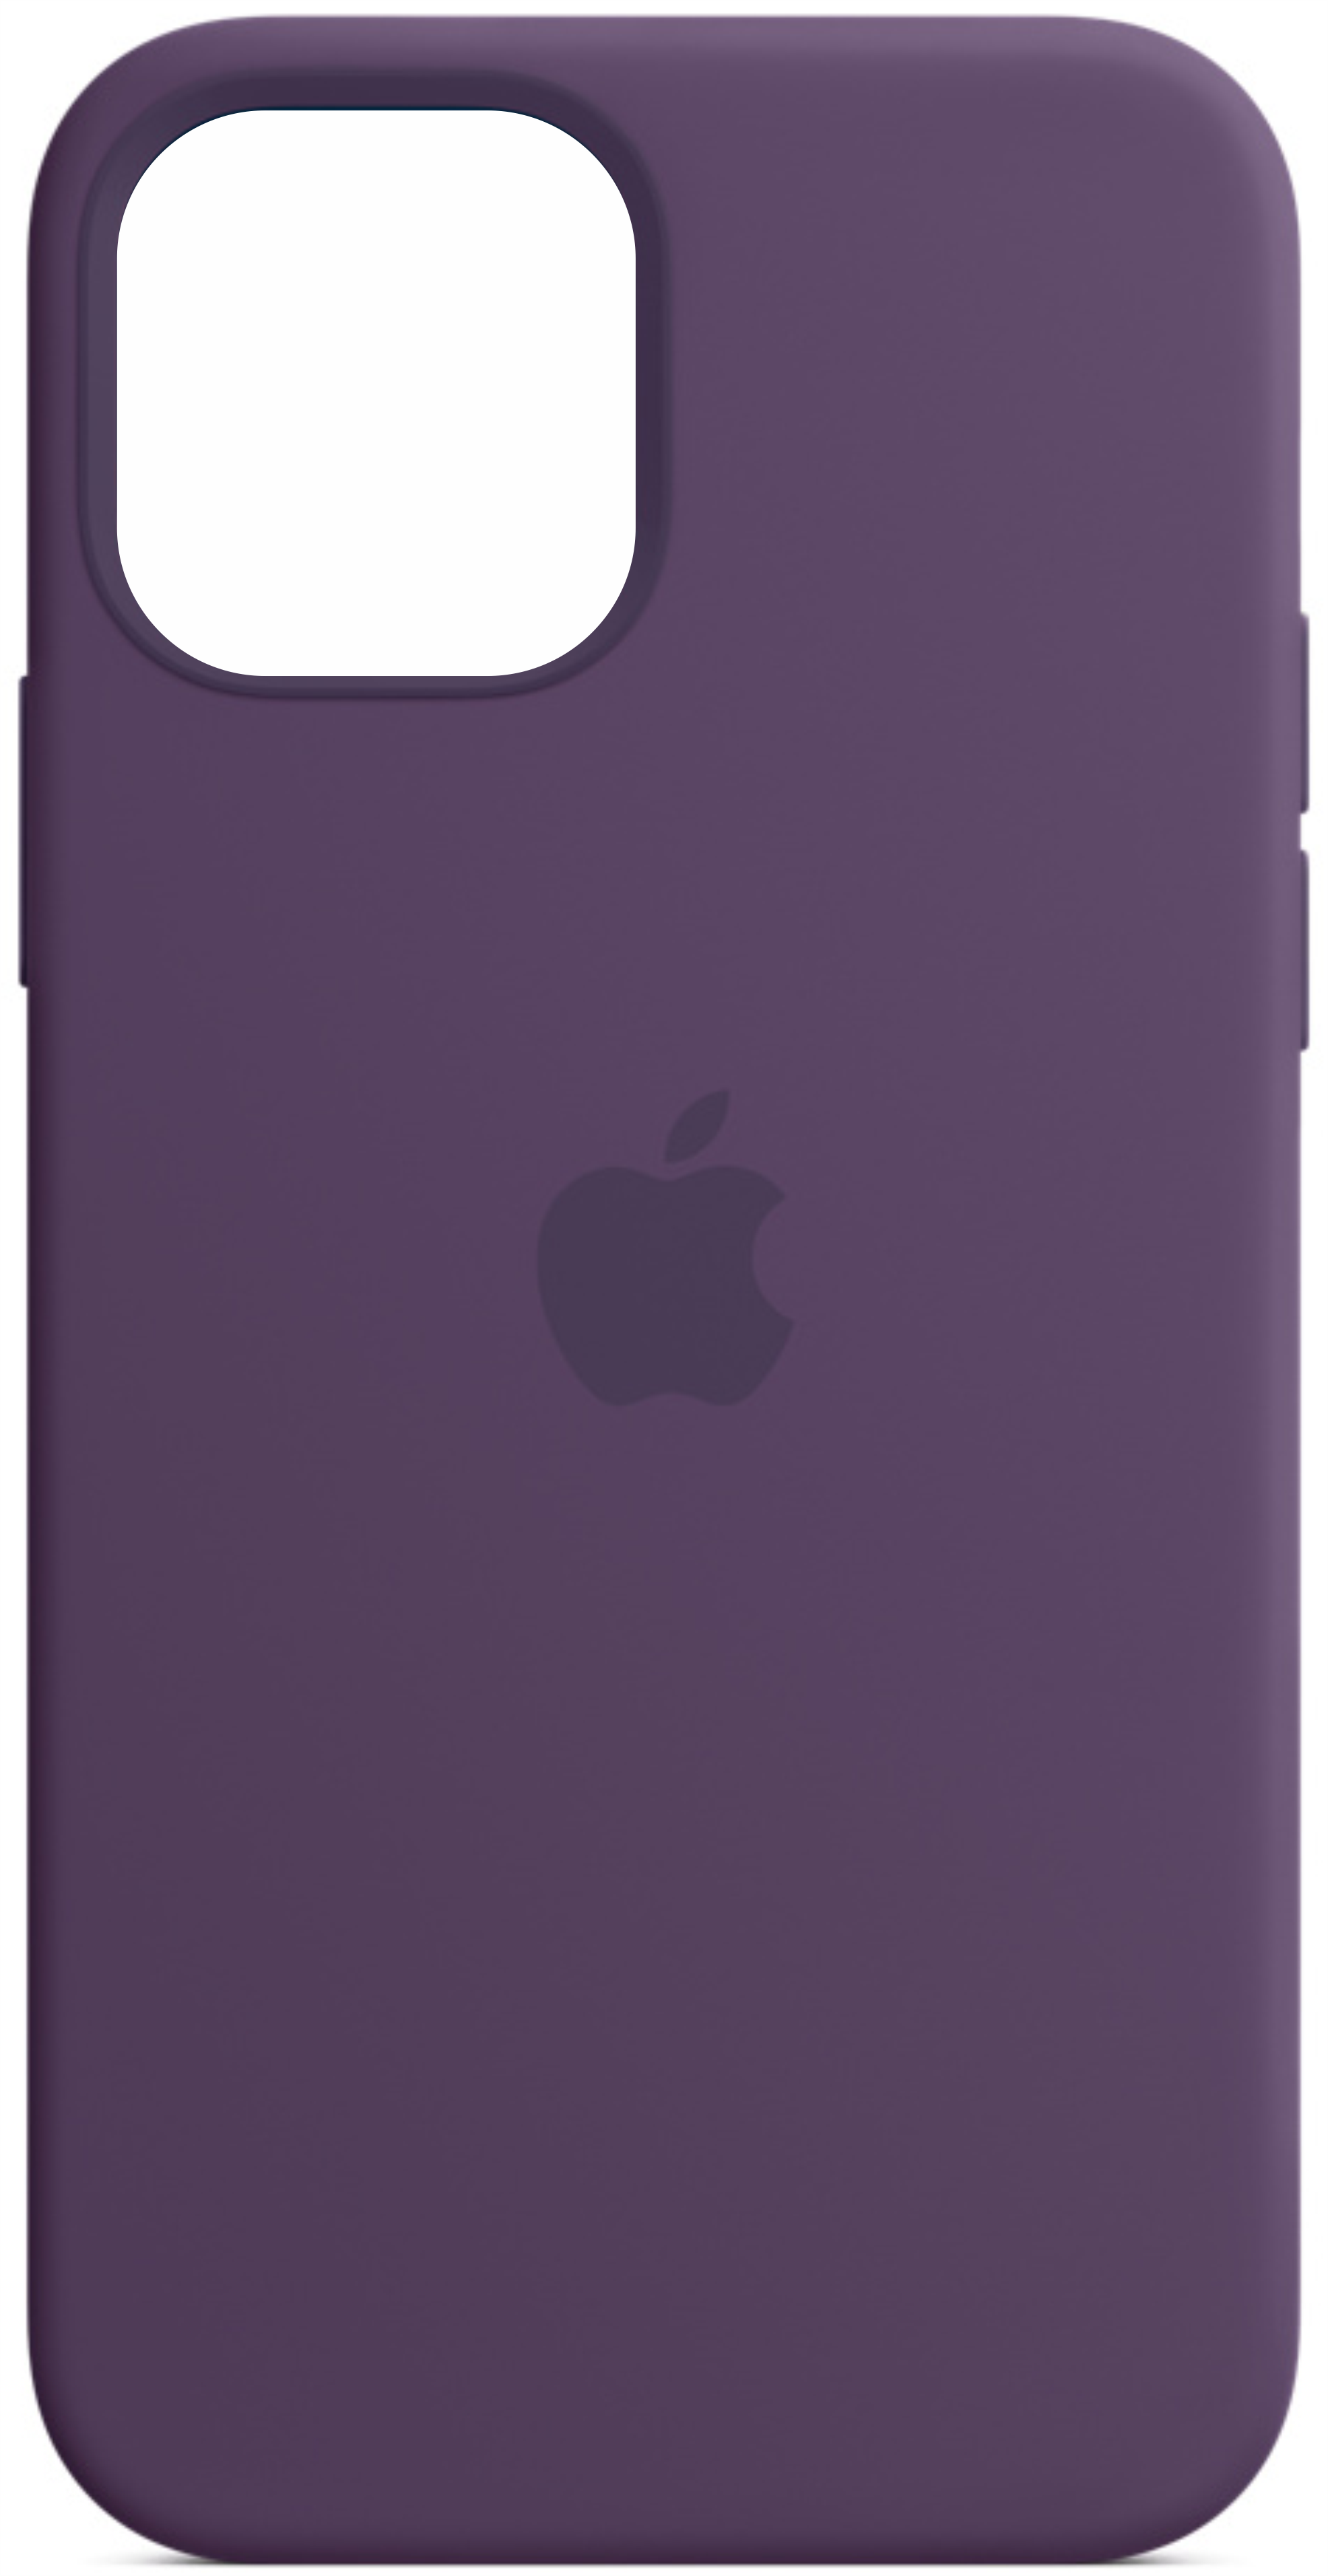 Чехол Original Silicone Case для iPhone 12/12 Pro, фиолетовый